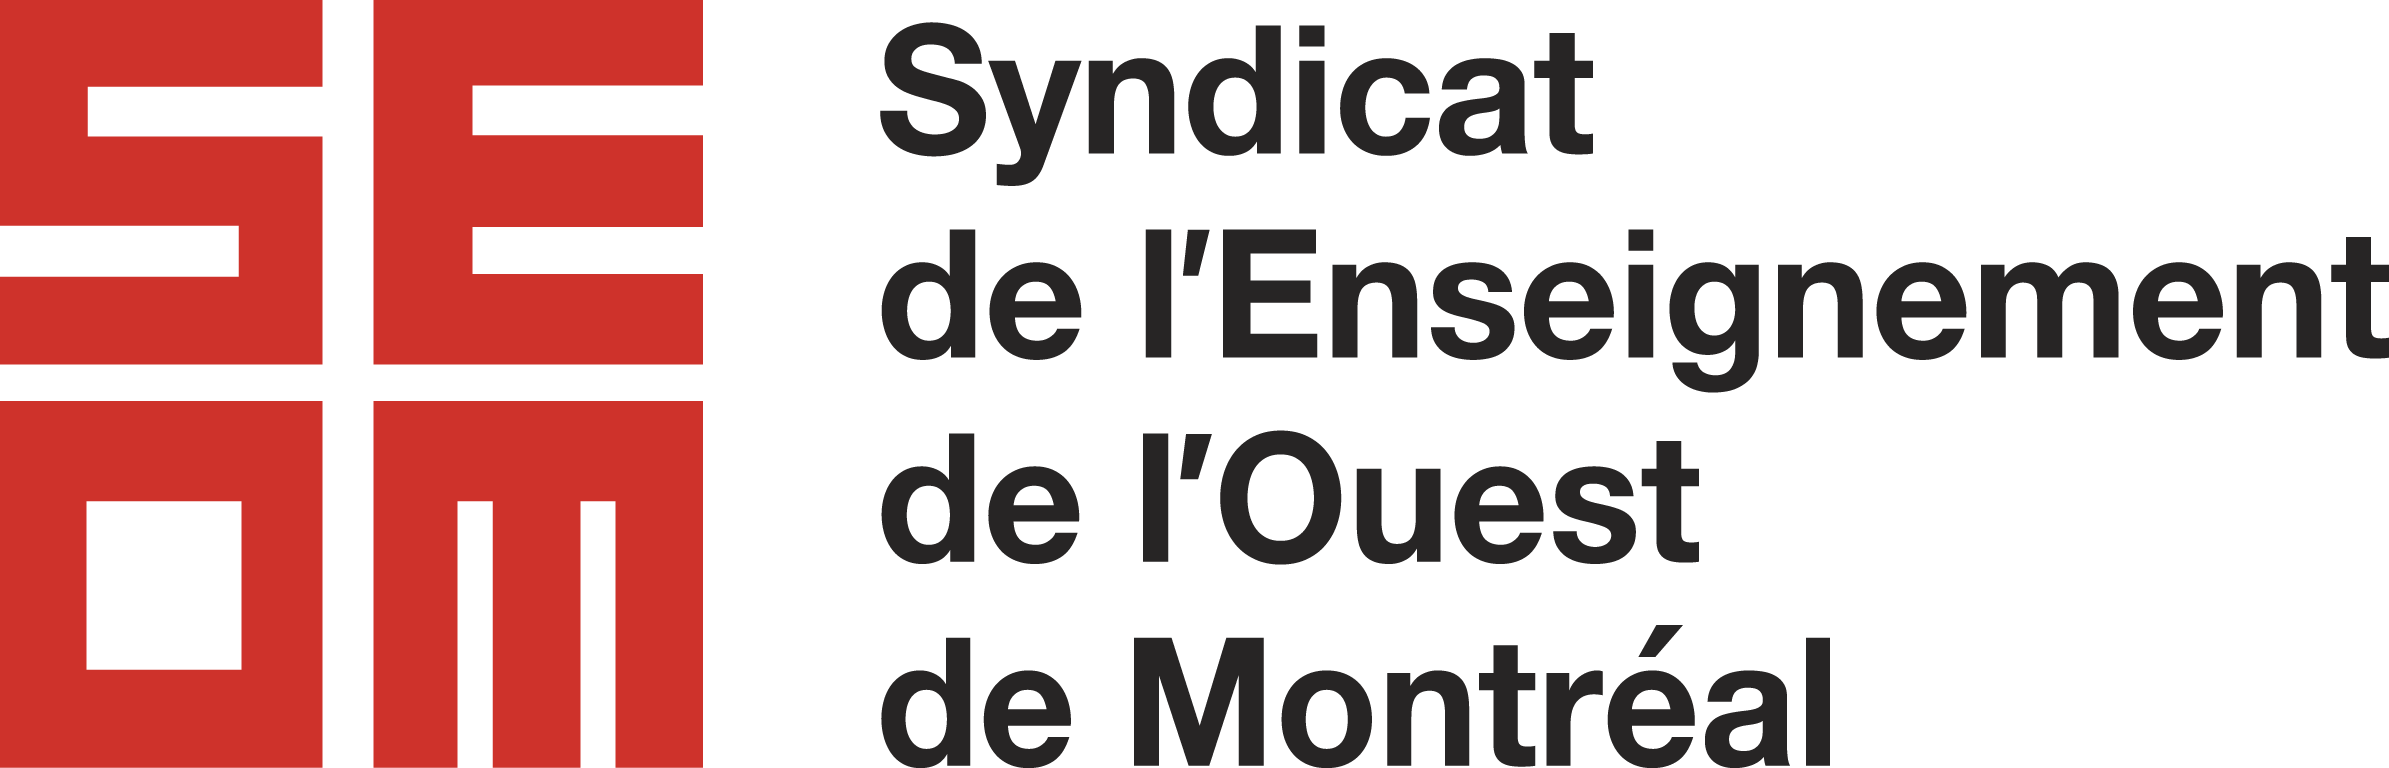 Syndicat de l'enseignement de l'Ouest de Montréal